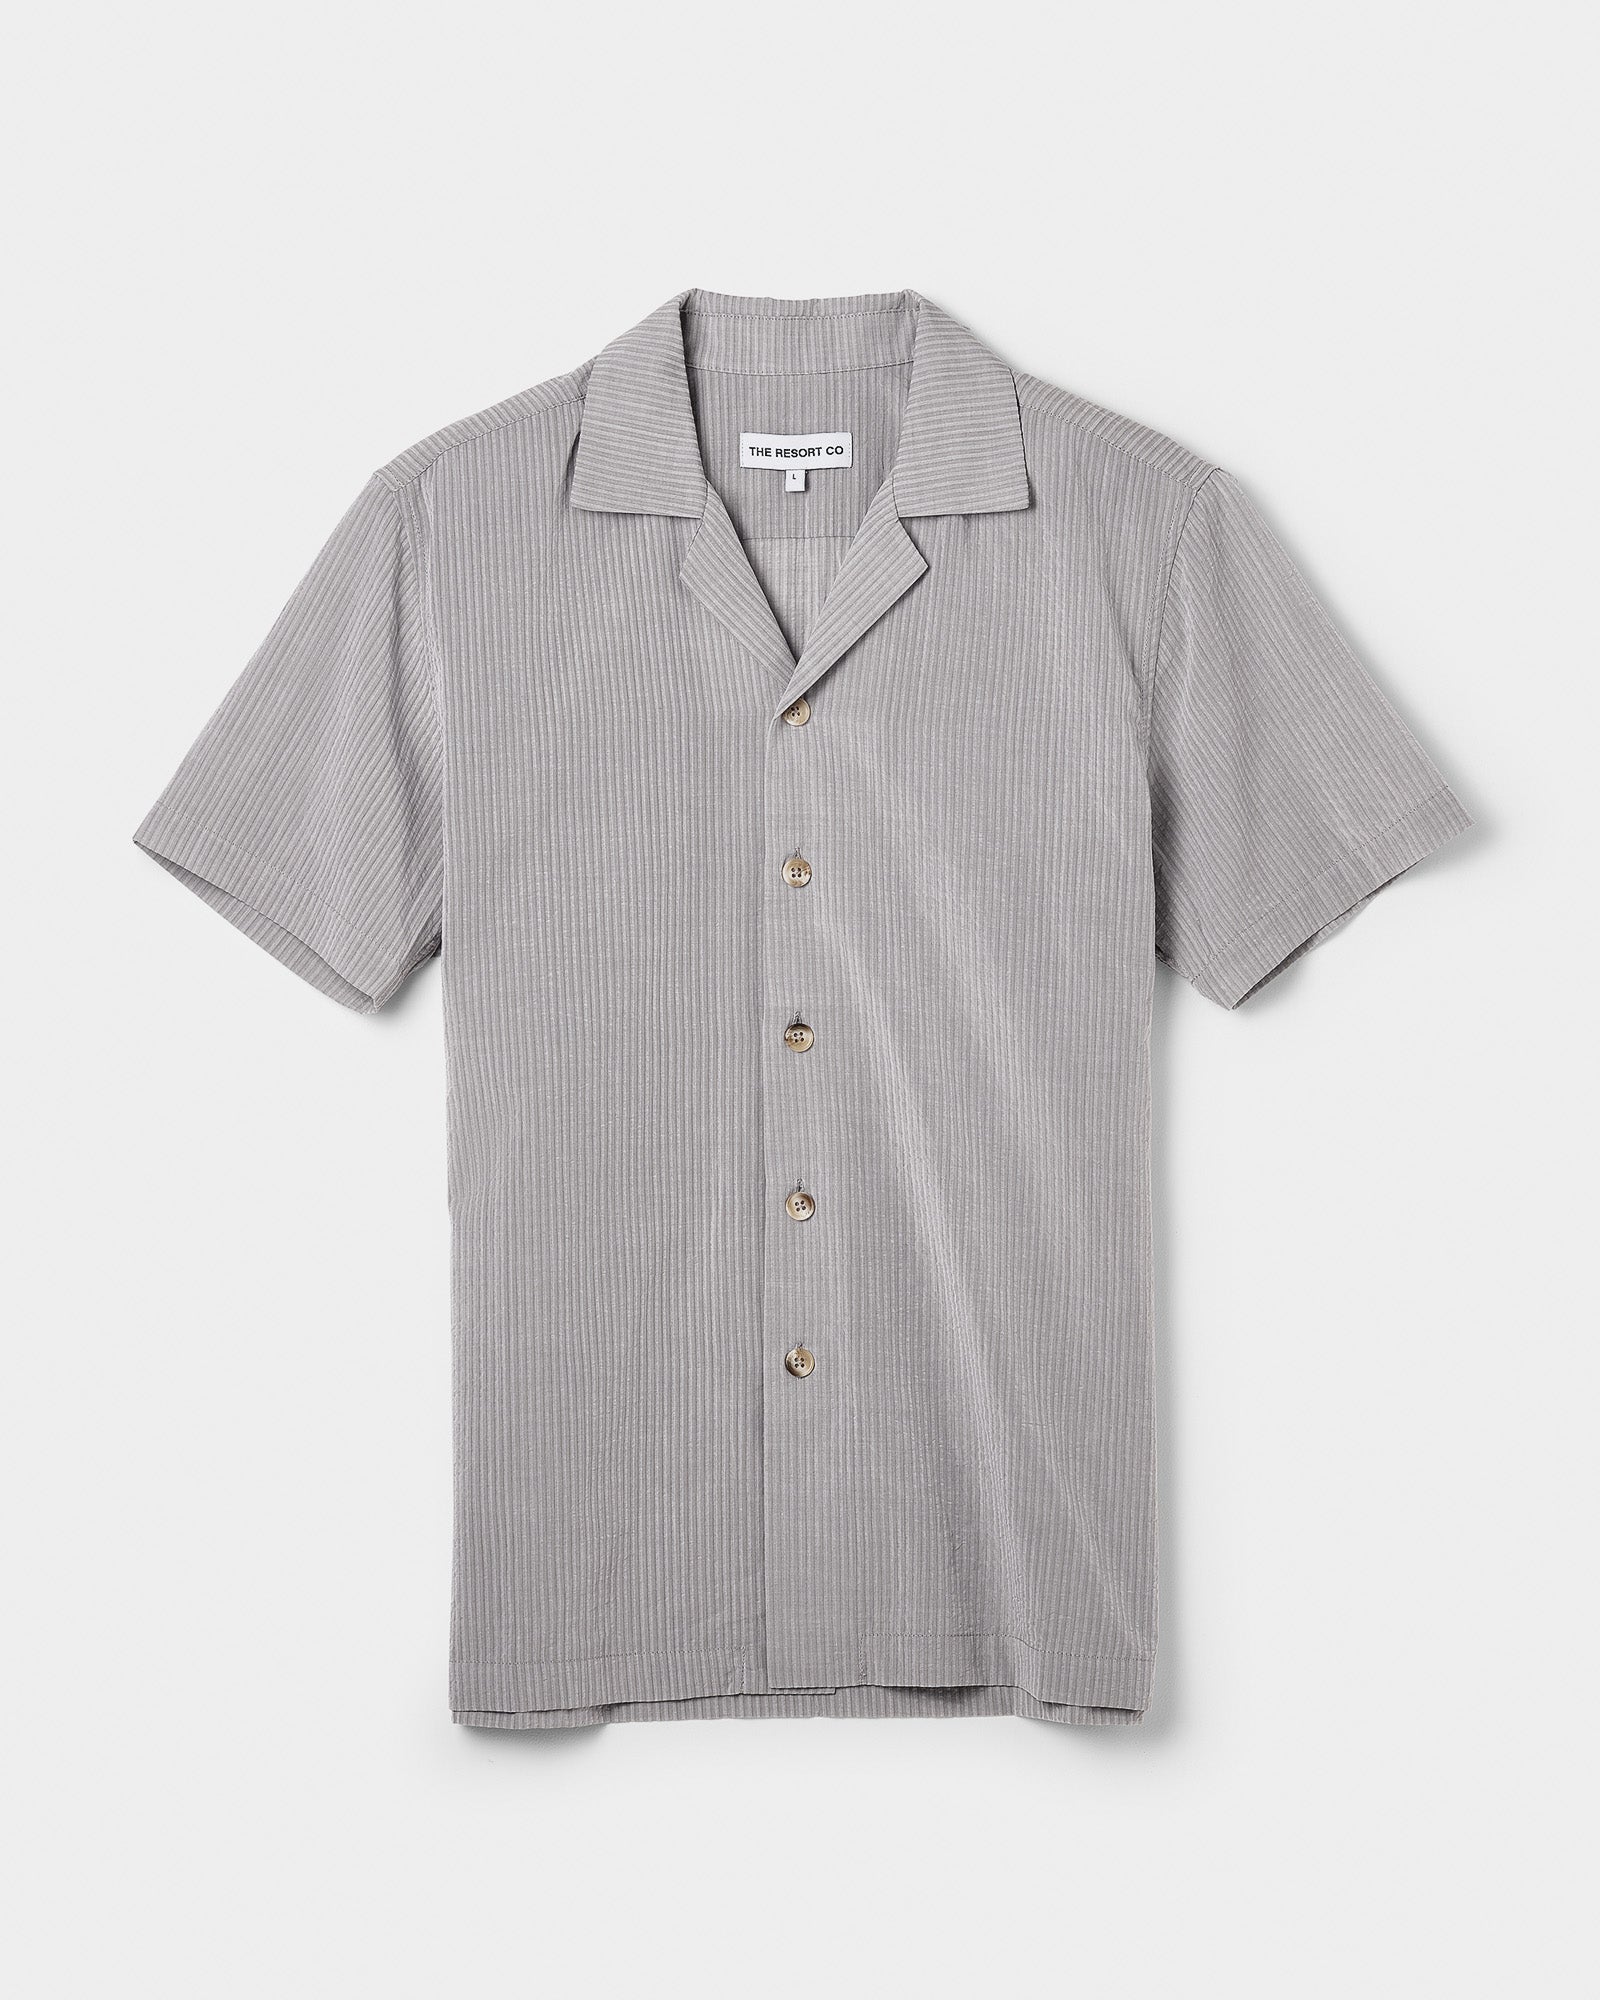 Seersucker Resort Shirt Sage - THE RESORT CO